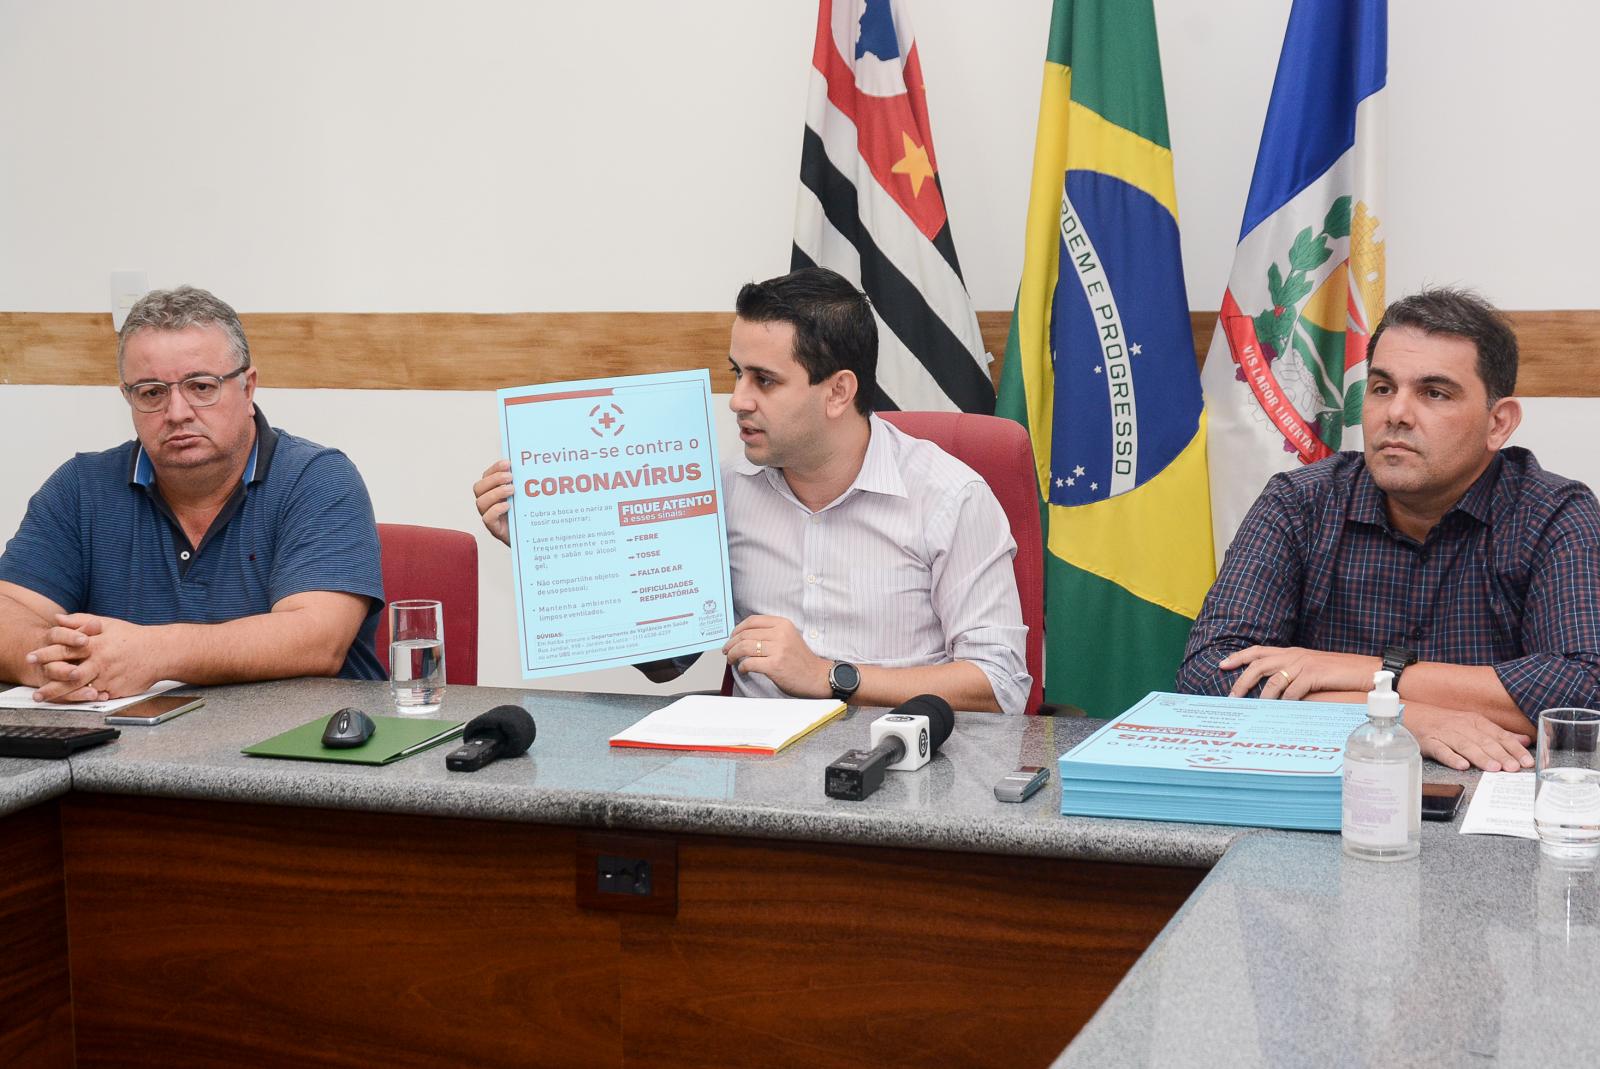 Itatibense com suspeita de coronavírus não ‘circulou’ pelo município, afirma prefeito